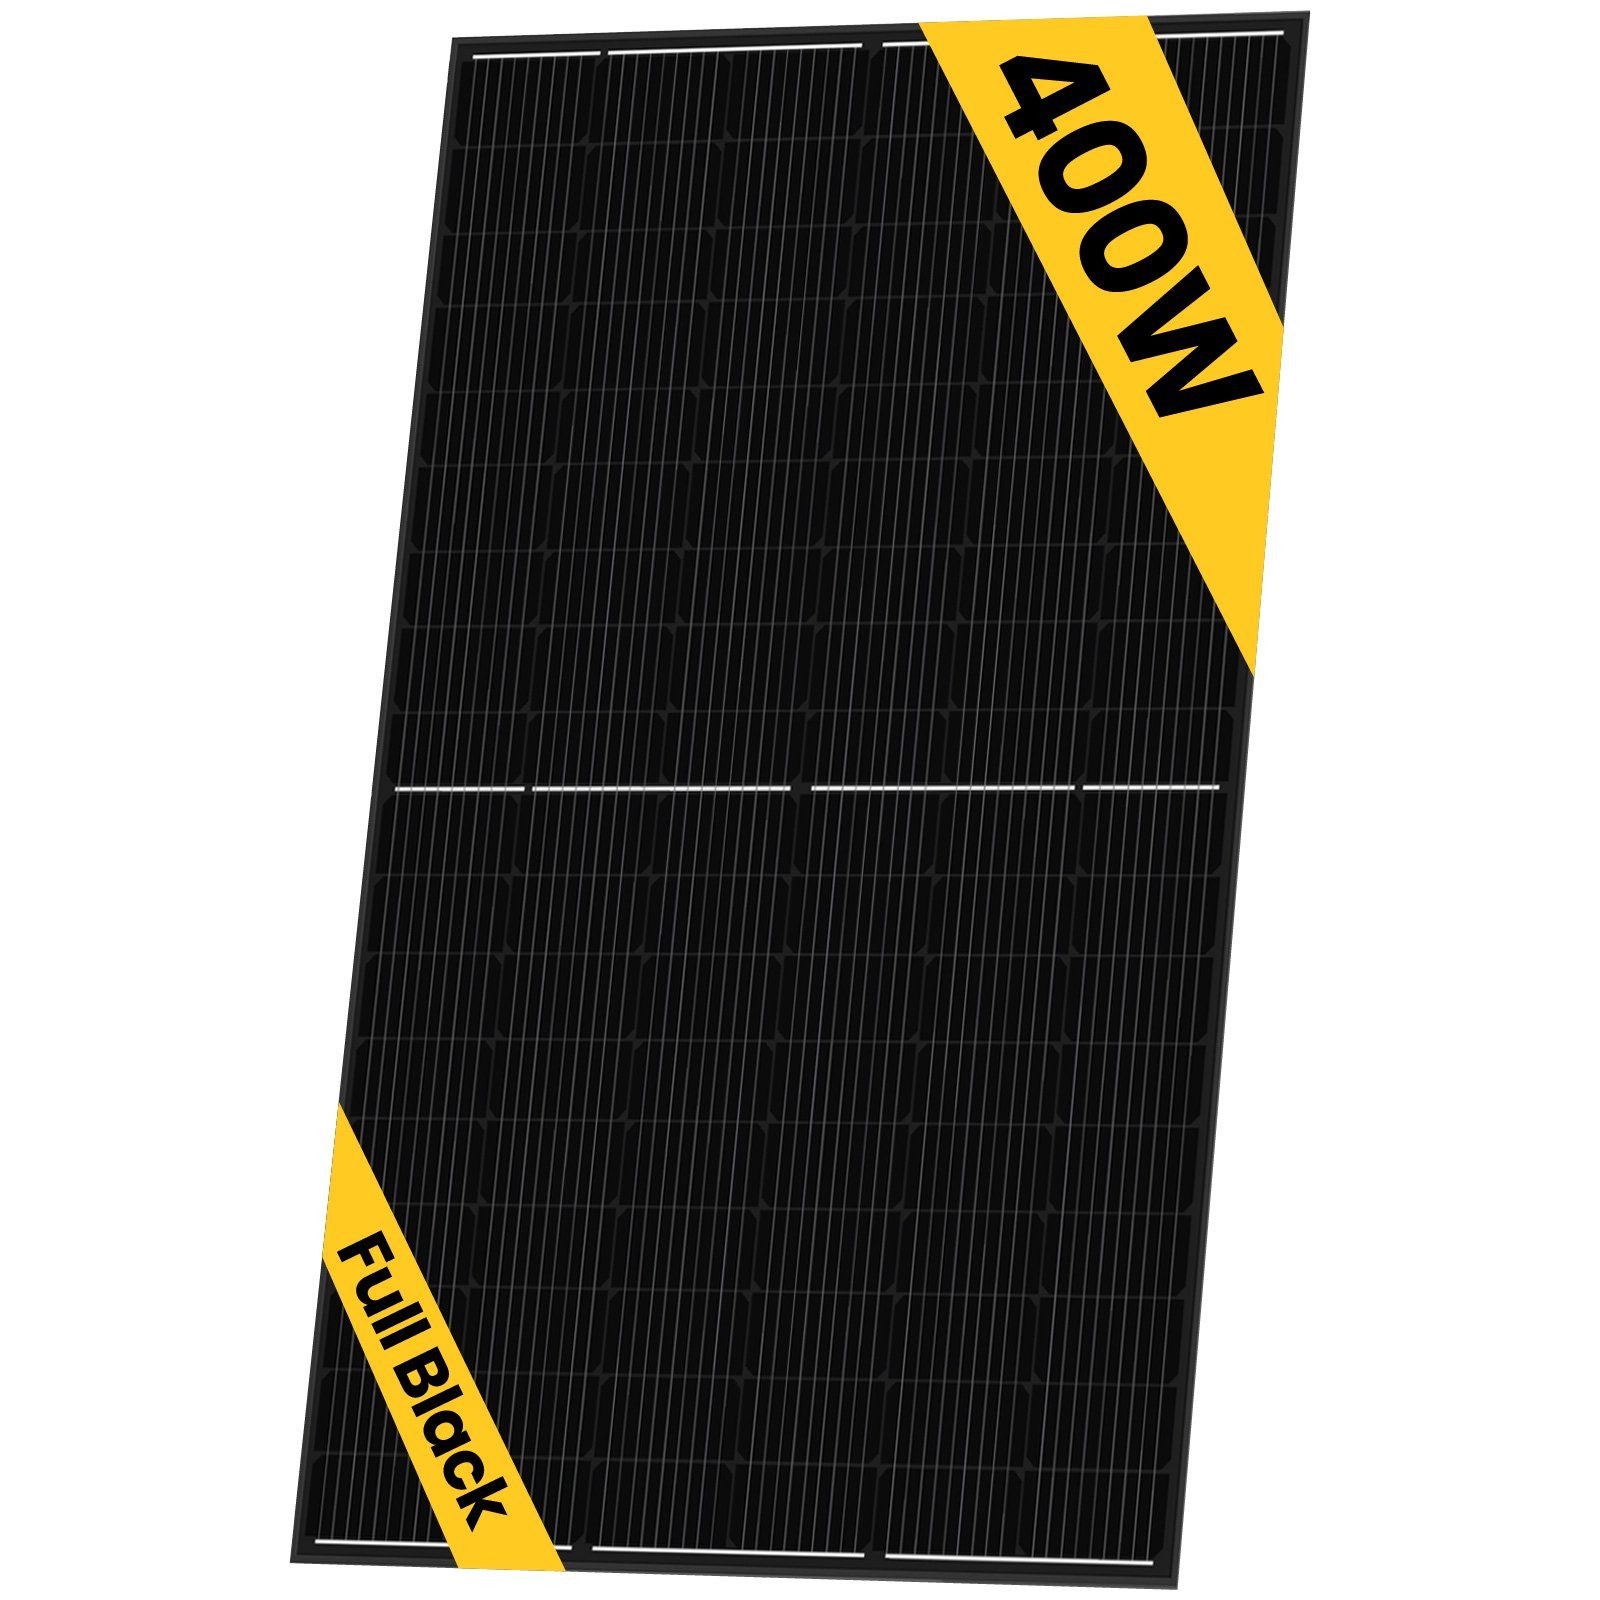 Stegpearl Solaranlage 5x 400W Sunpro Photovoltaik Hieff monokristalline Schwarz Solarmodul, Schwarz (Solarpanel), Wasserdichtigkeitsklasse IP68 | Solaranlagen